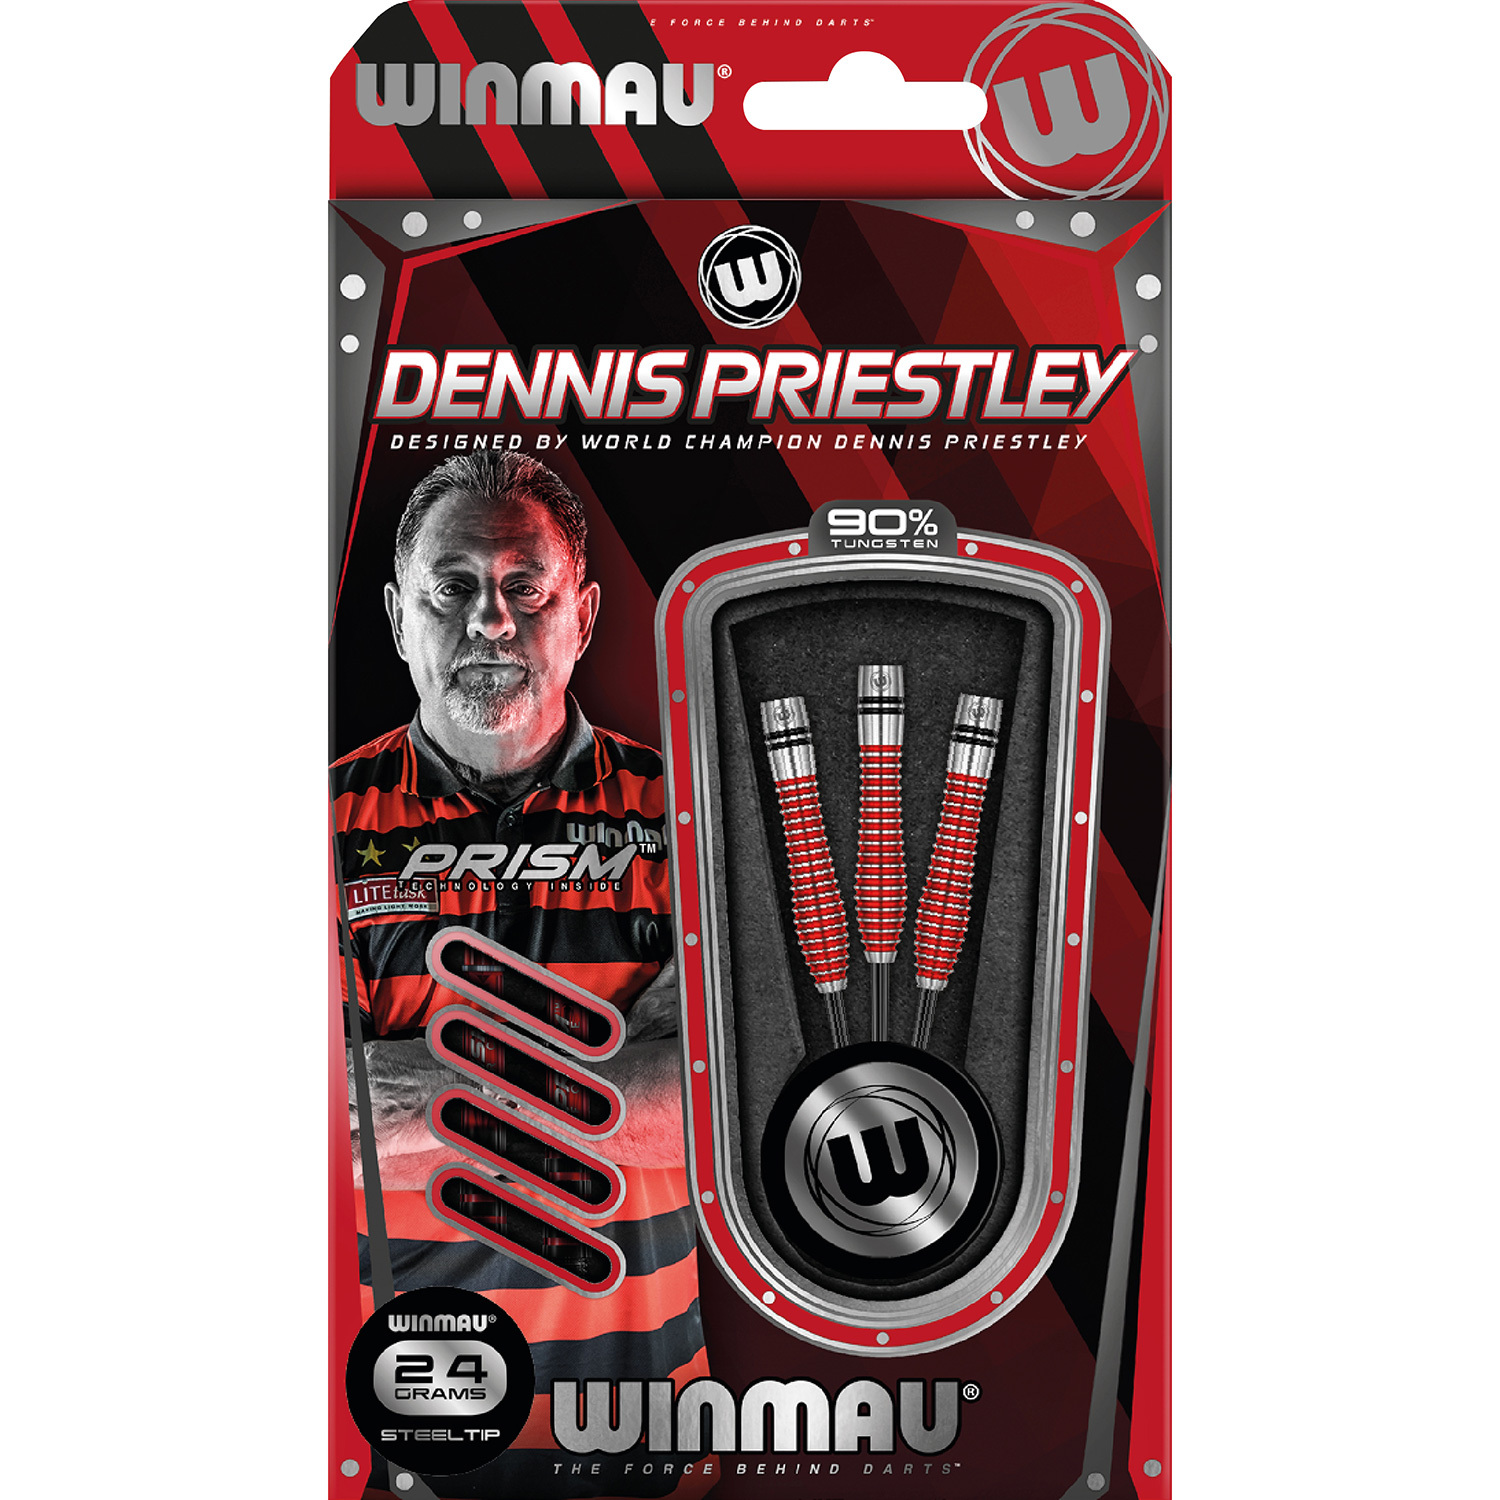 WINMAU Winmau Dennis Priestley SE steeltip darts 24gr